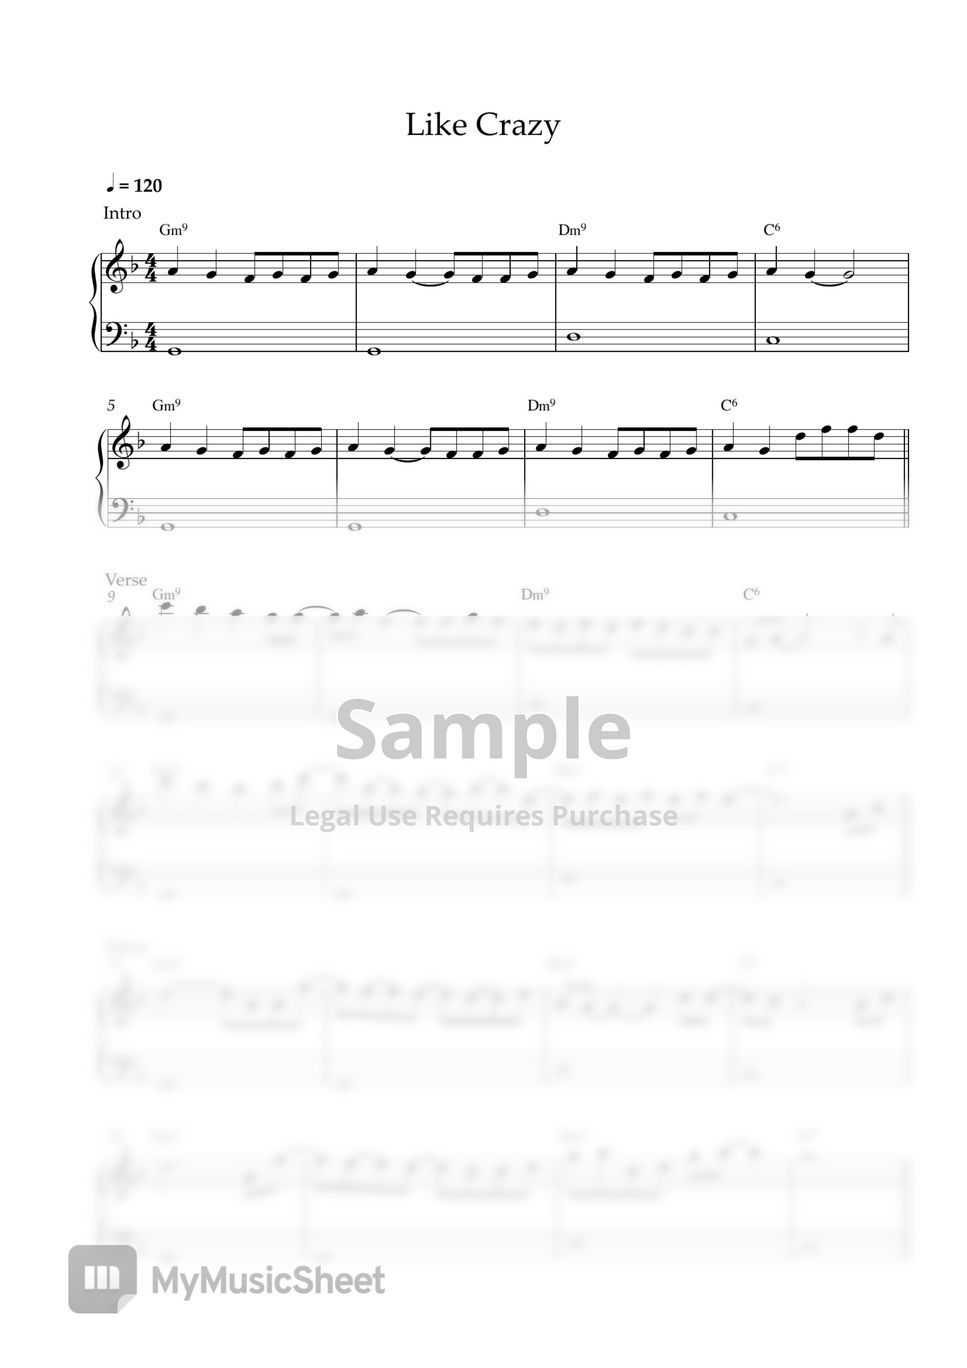 Jimin - Like Crazy (EASY PIANO SHEET) by Pianella Piano